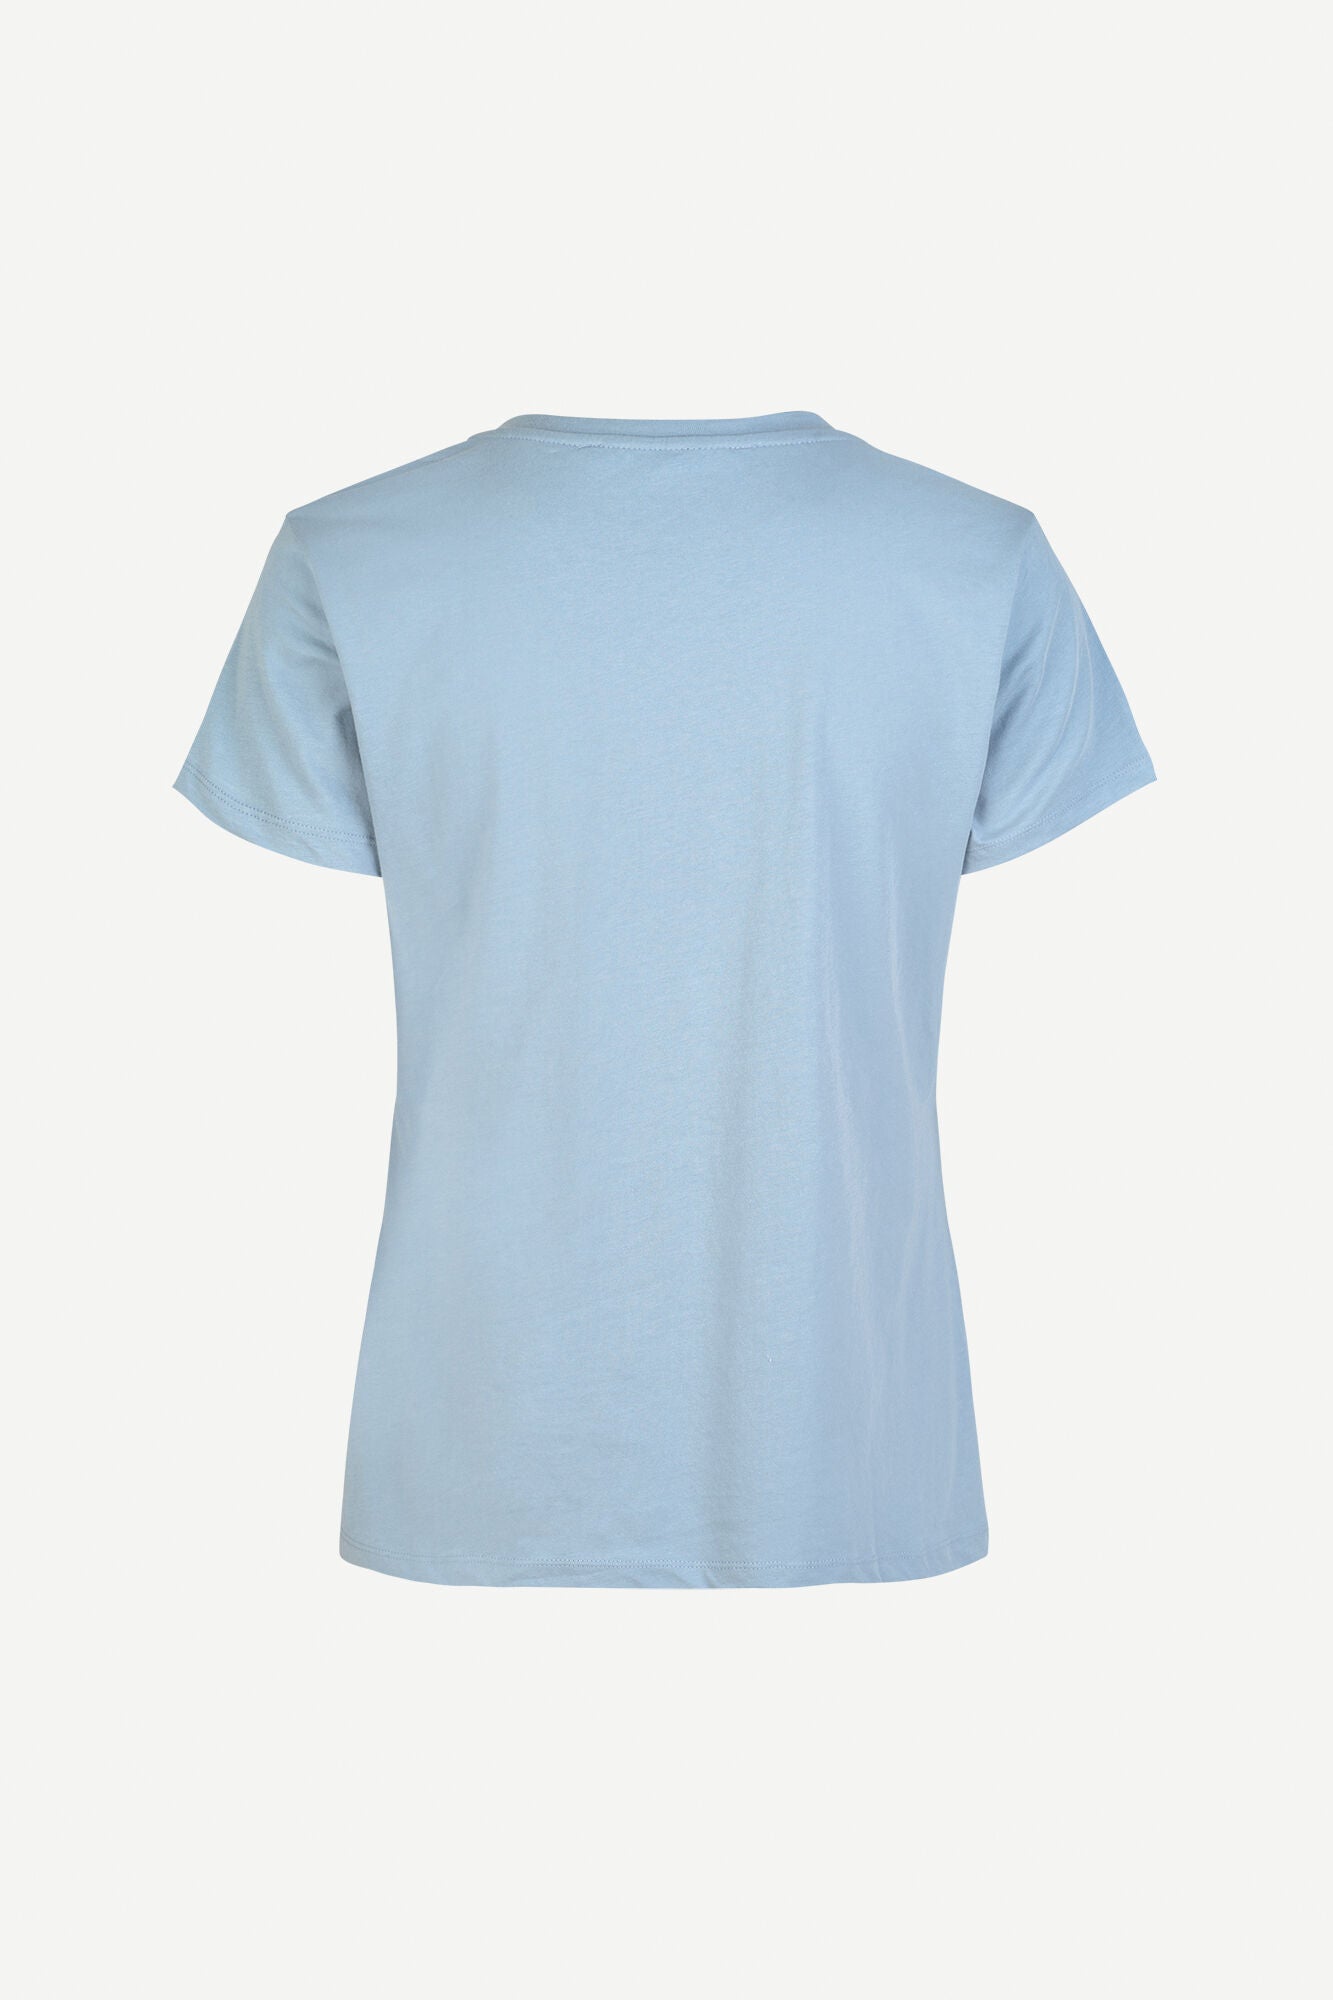 Basic shirt in dusty blue